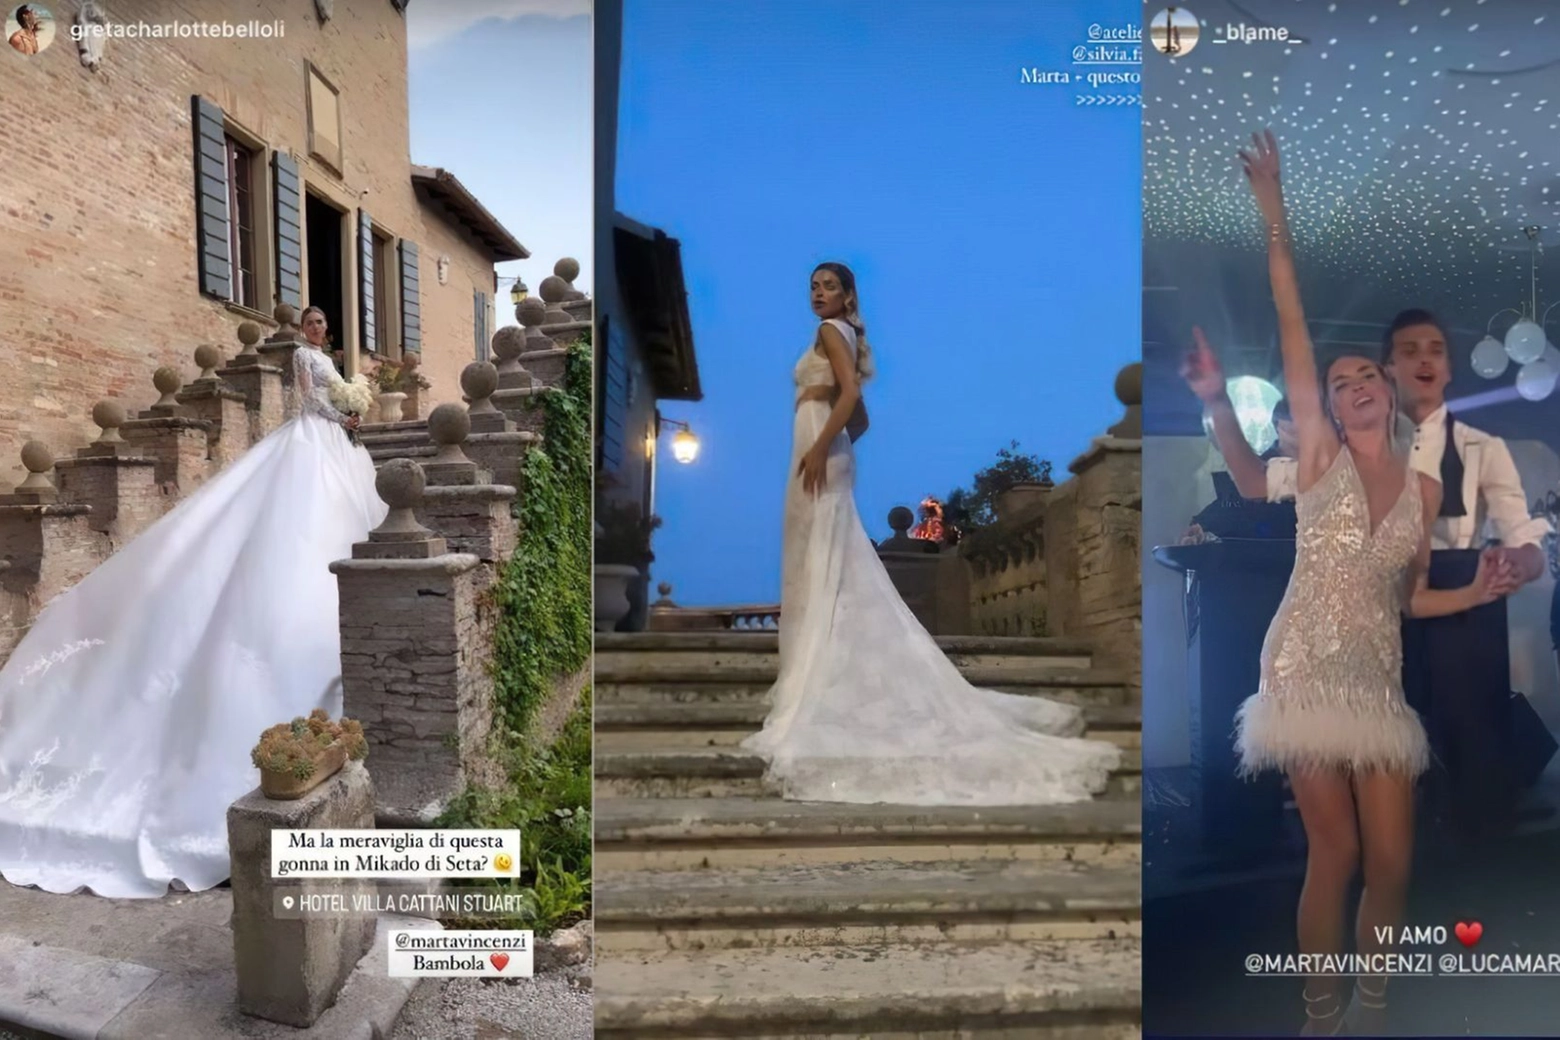 Luca Marini e Marta Vincenzi sposi: gli abiti della sposa